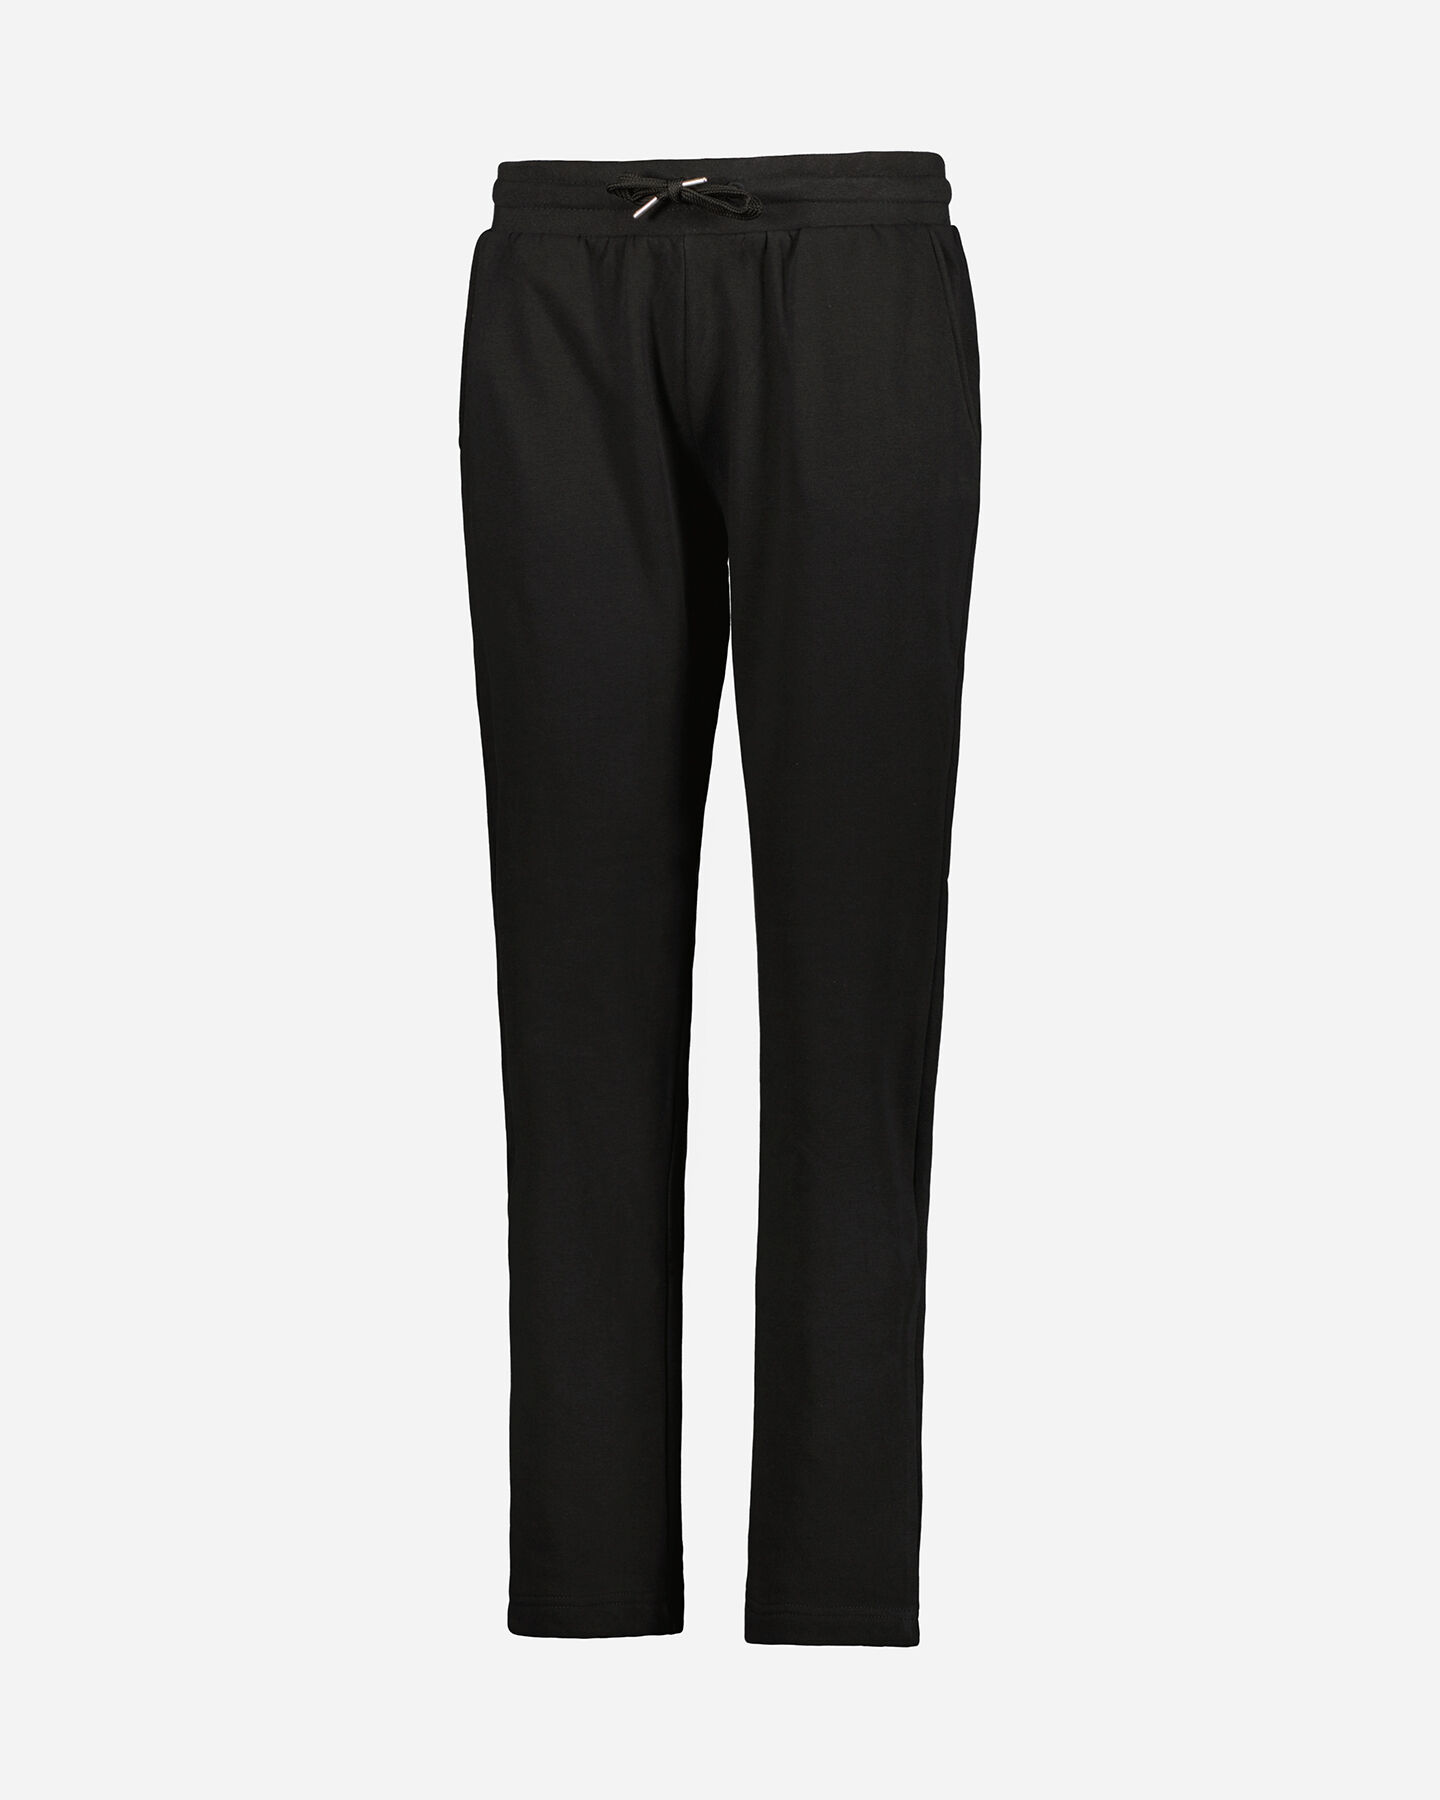  Pantalone ADMIRAL CLASSIC W S4106251|050|S scatto 0